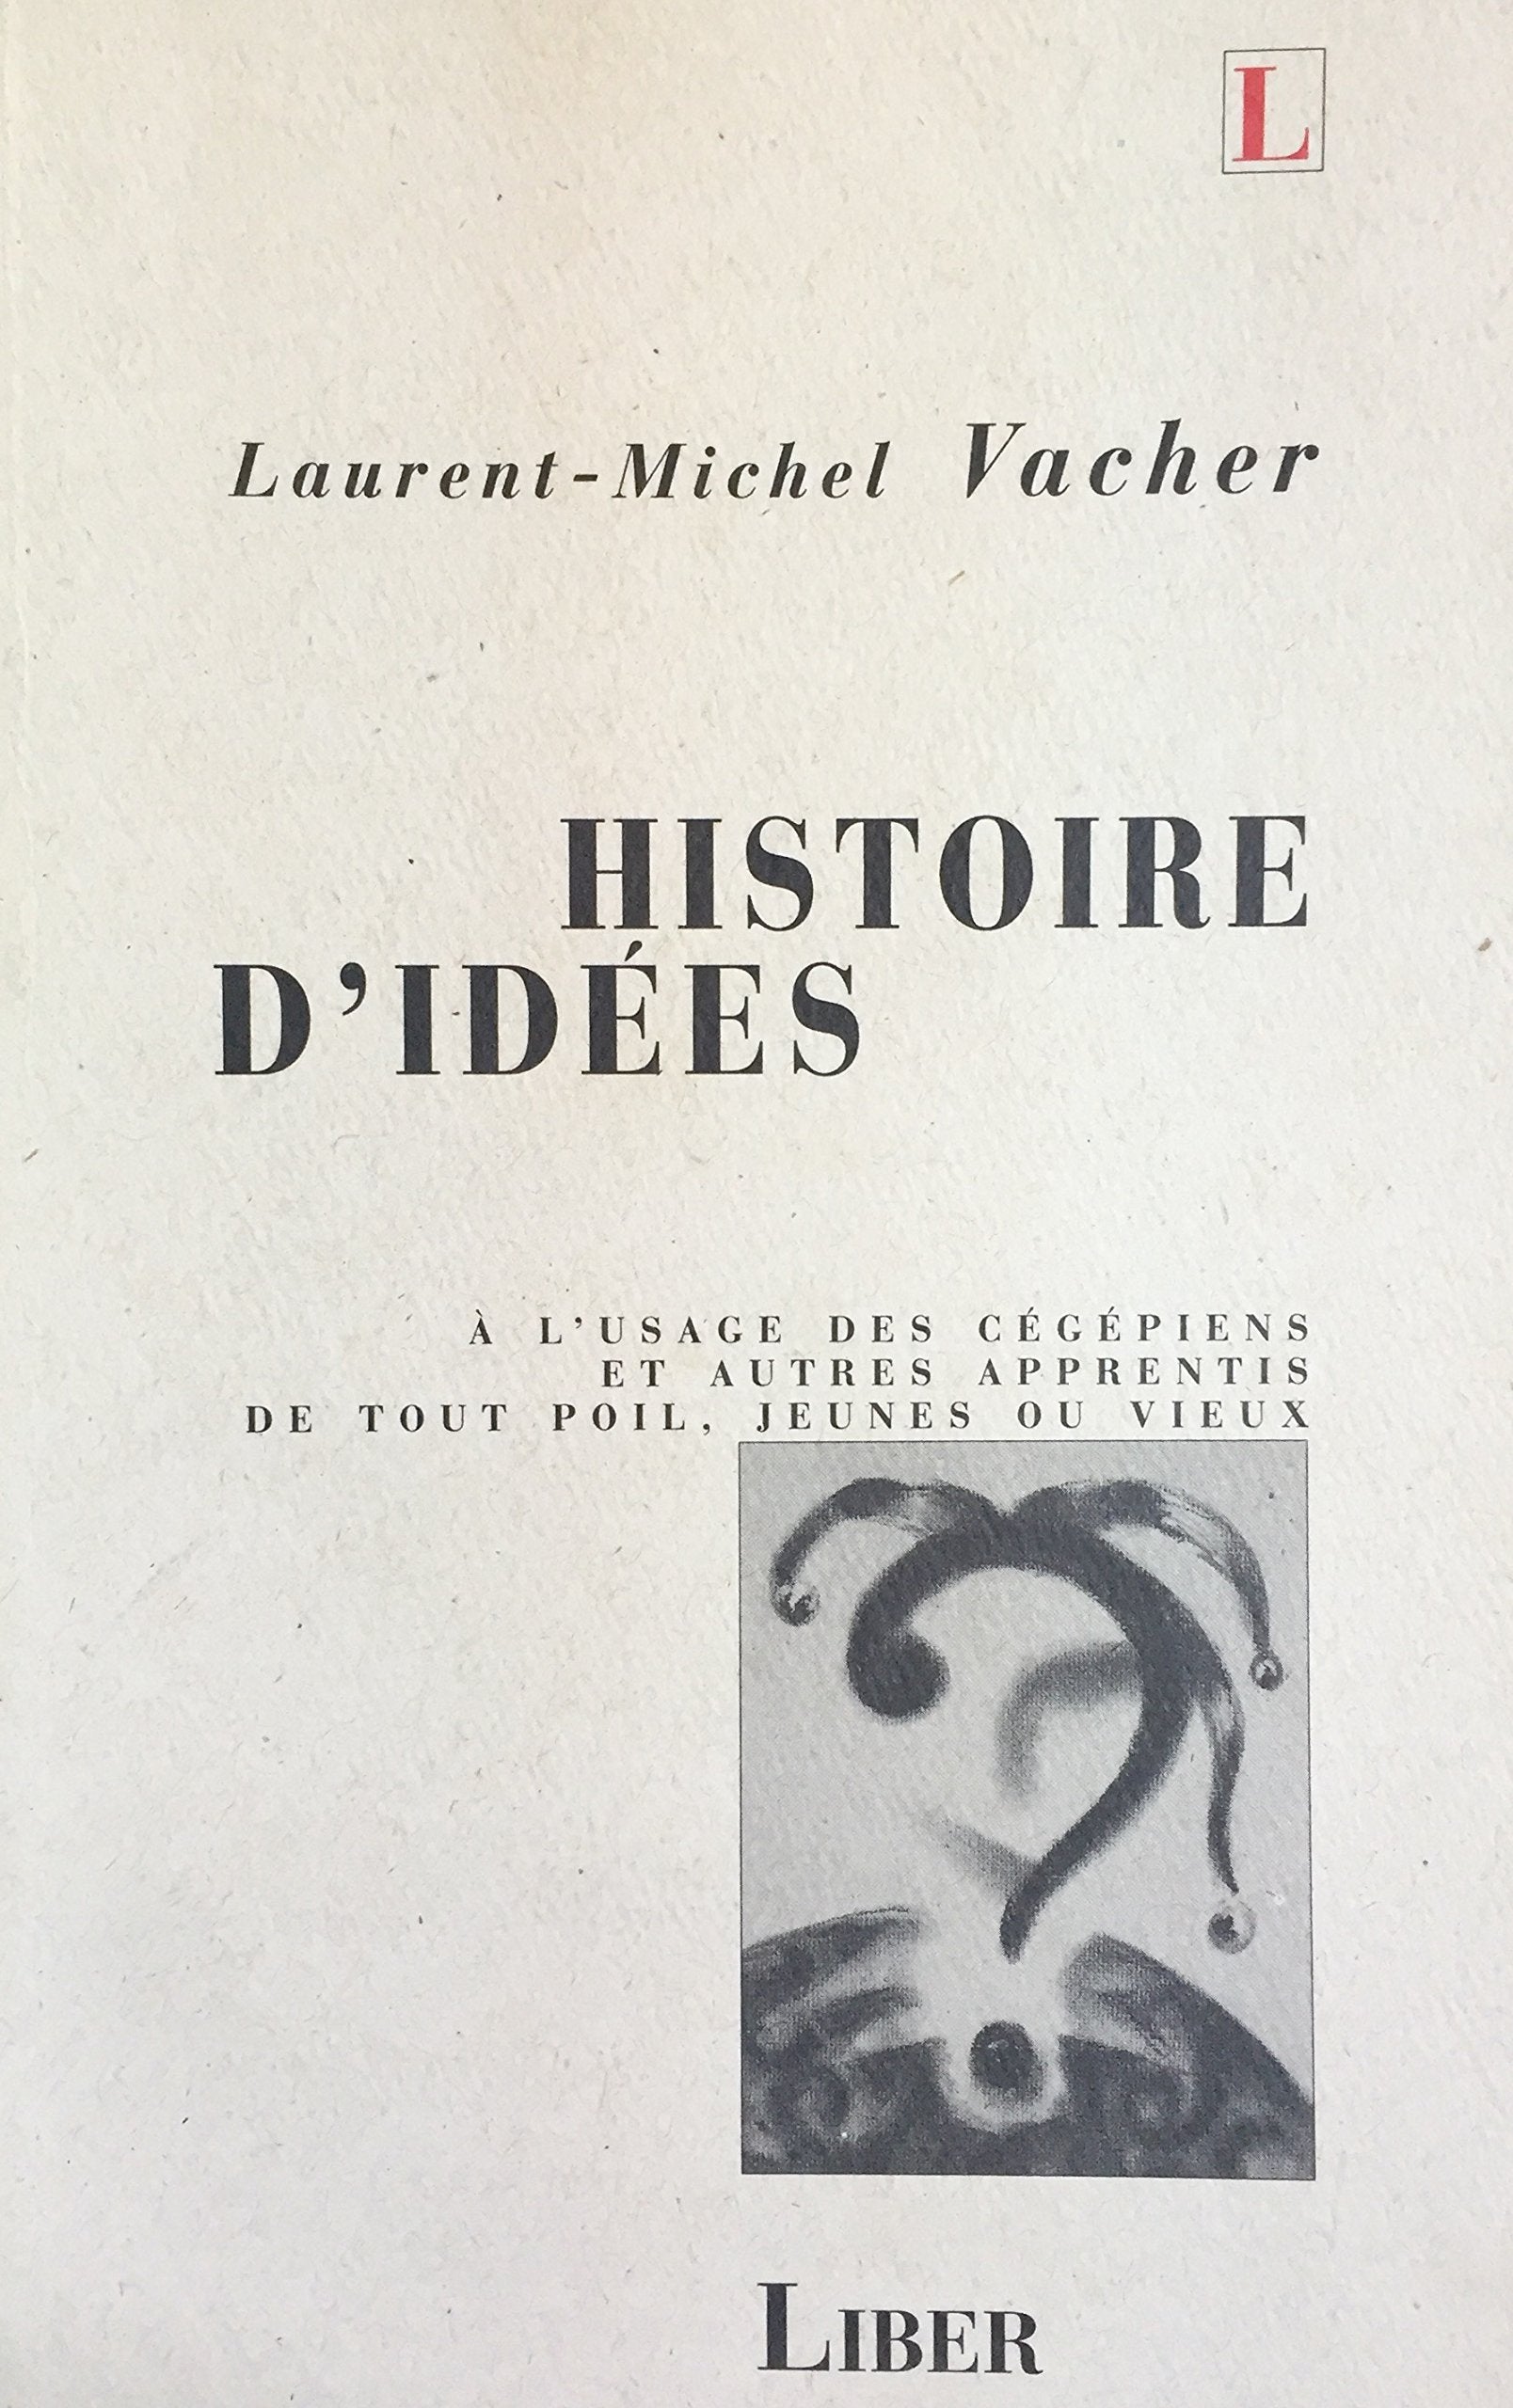 Livre ISBN 2921569132 Histoire d'idées : À l'usage des cégépiens et autres apprentis de tout poil, jeunes ou vieux (Laurent-Michel Vacher)